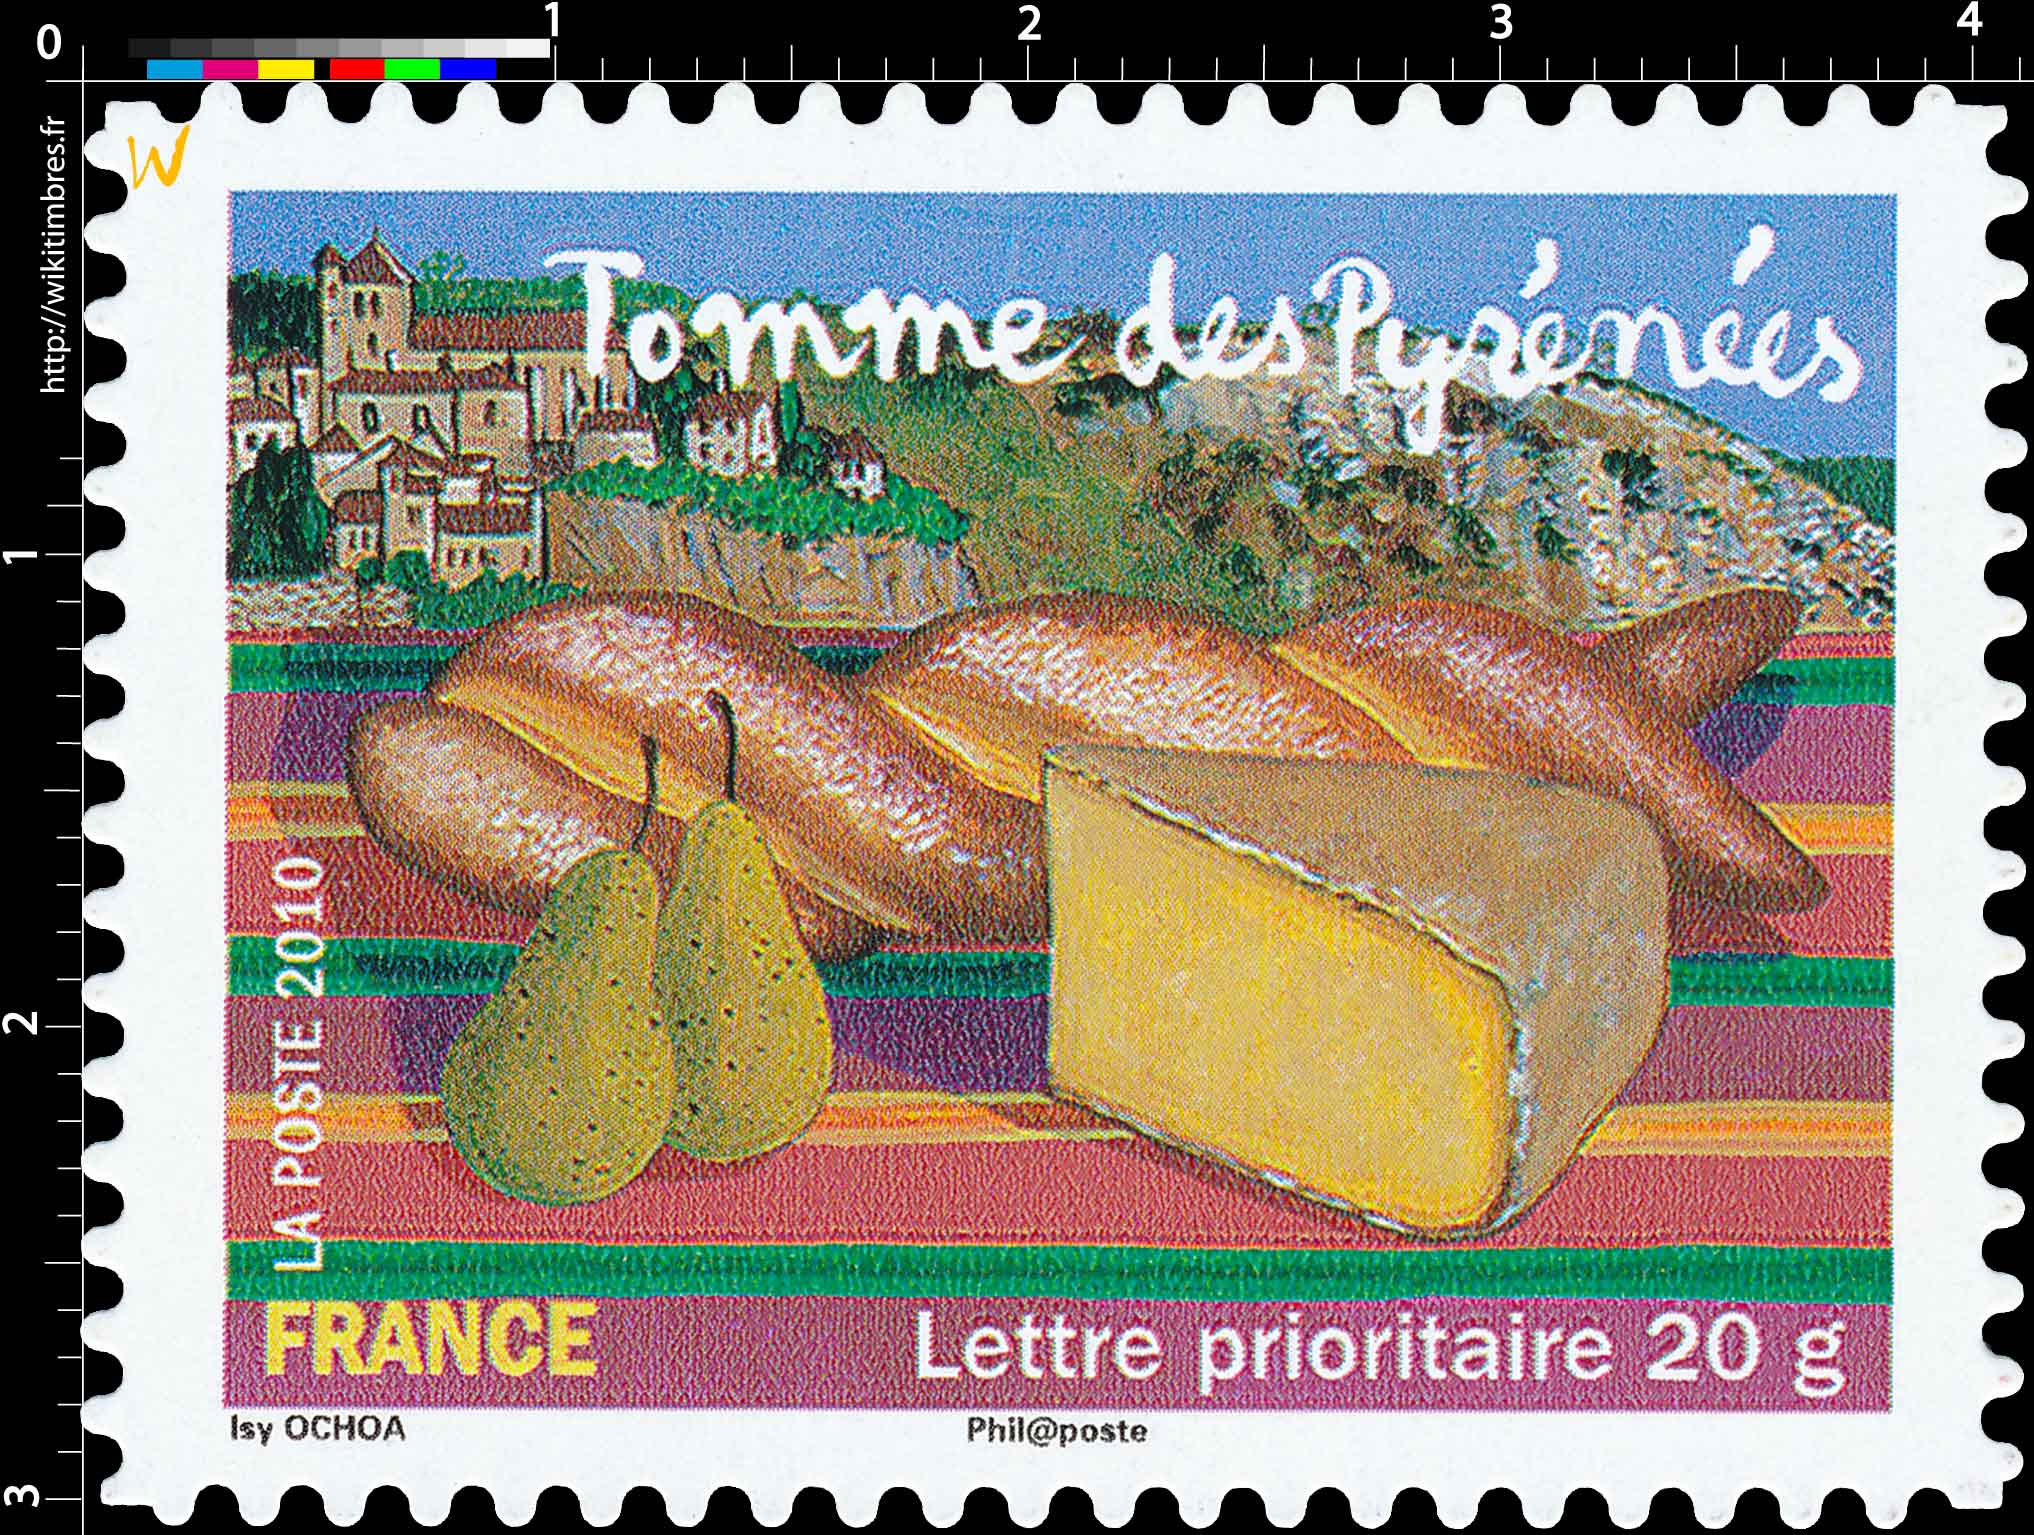 2010 Tomme des Pyrénées